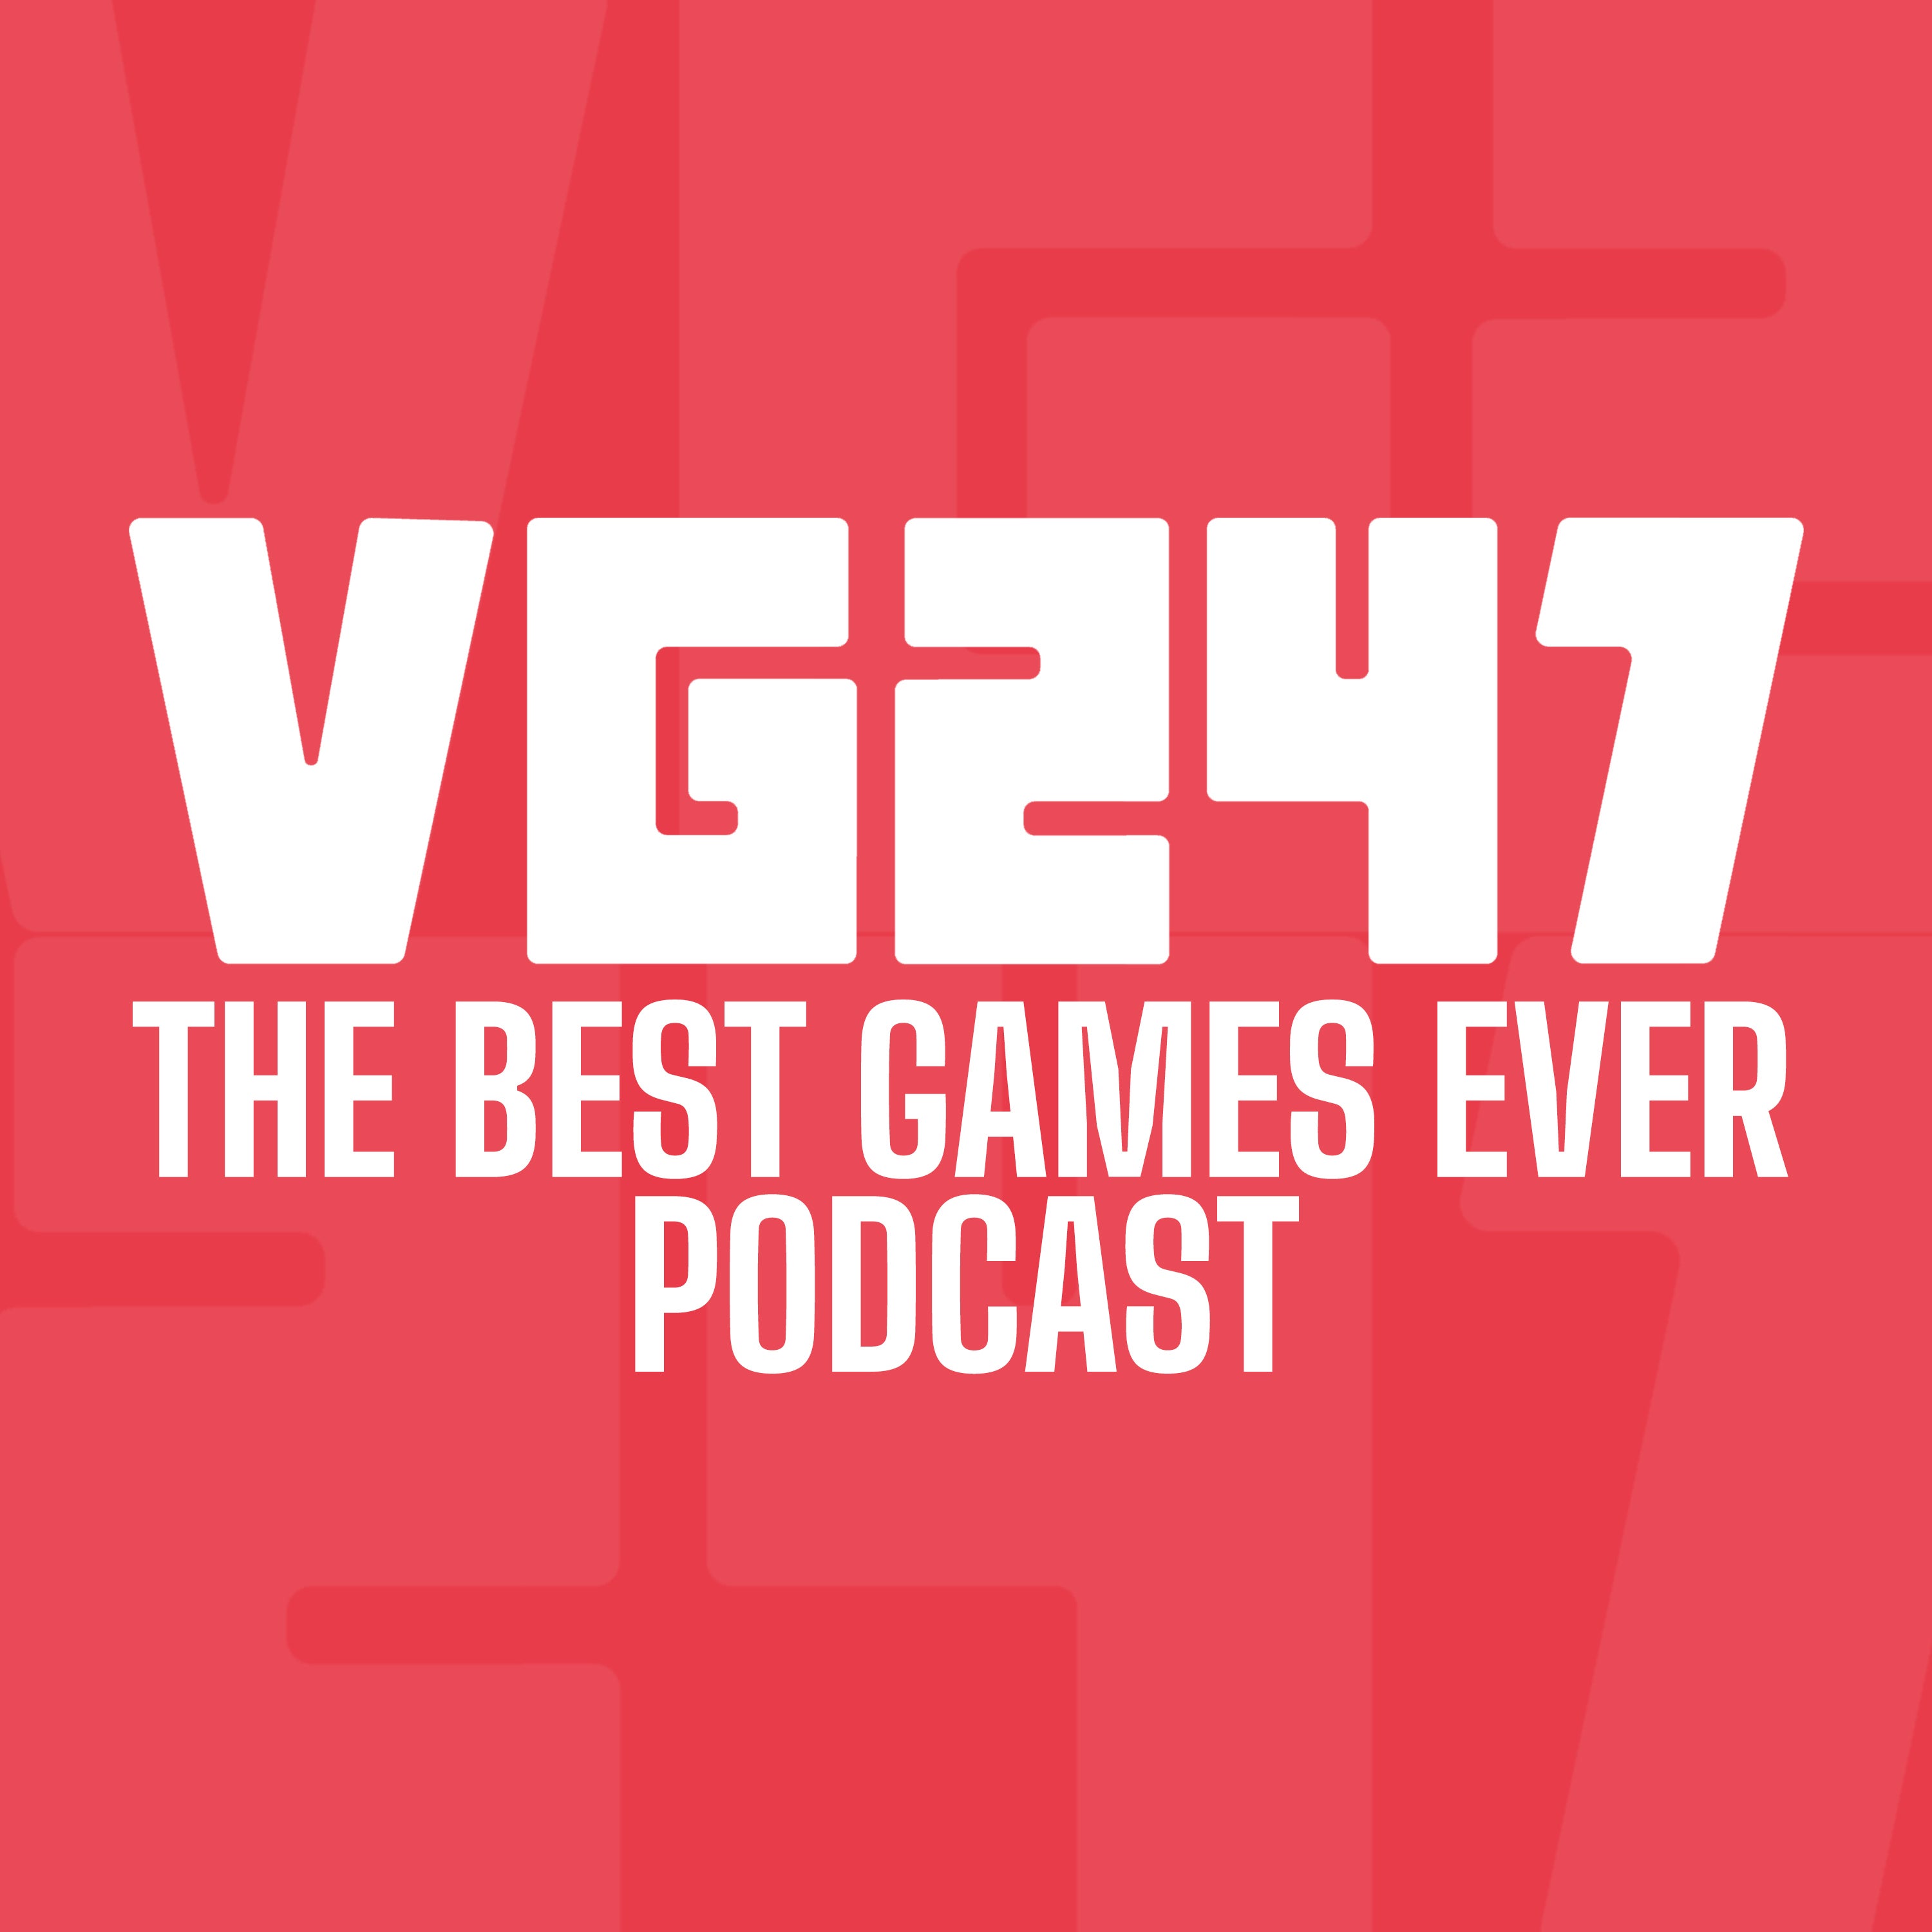 Logo do podcast Best Games Ever do VG247.  Texto branco sobre fundo vermelho.